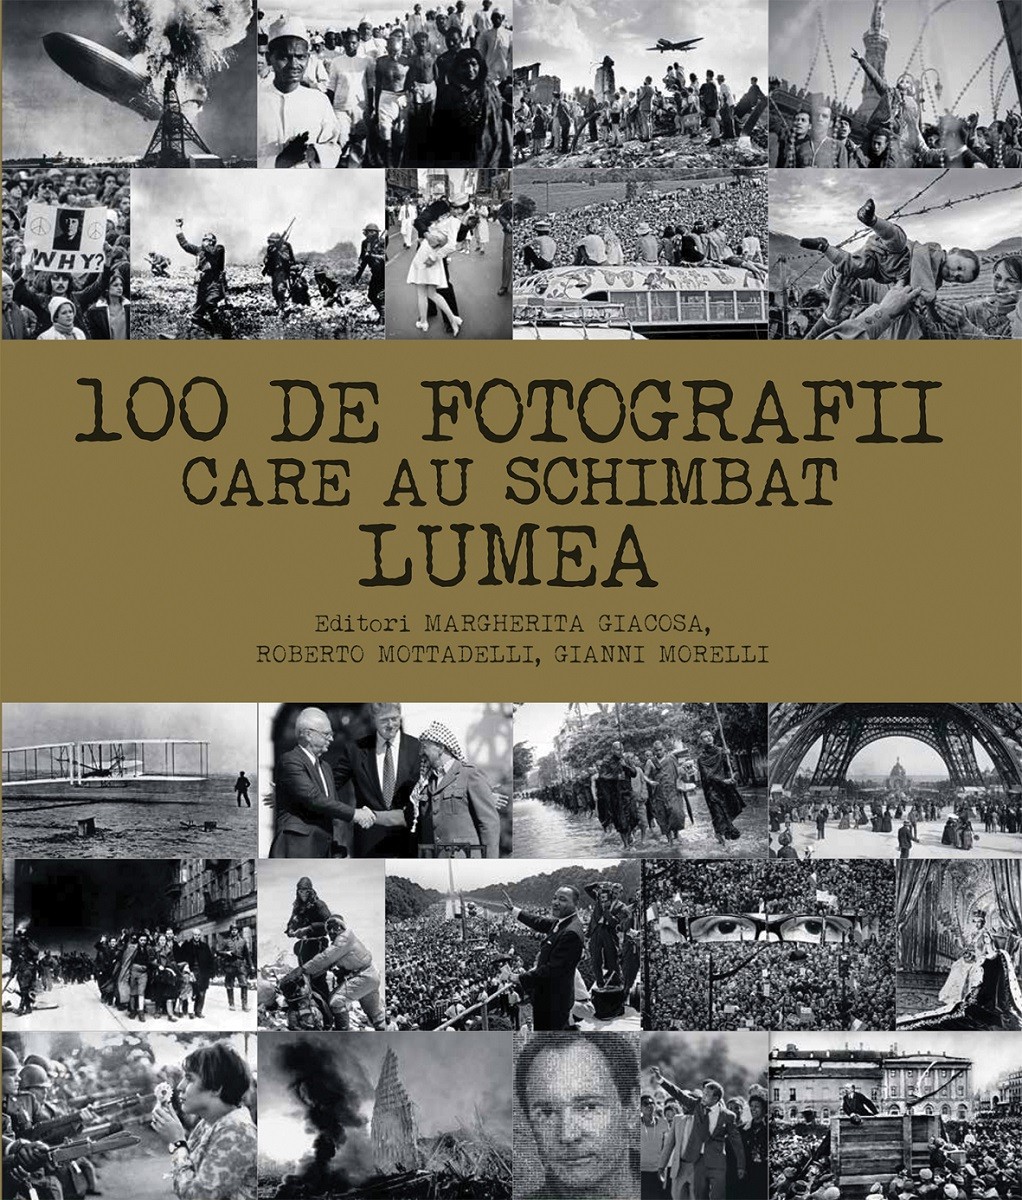 100 de fotografii care au schimbat lumea | Margherita Giacosa, Roberto Mottadelli, Gianni Morelli